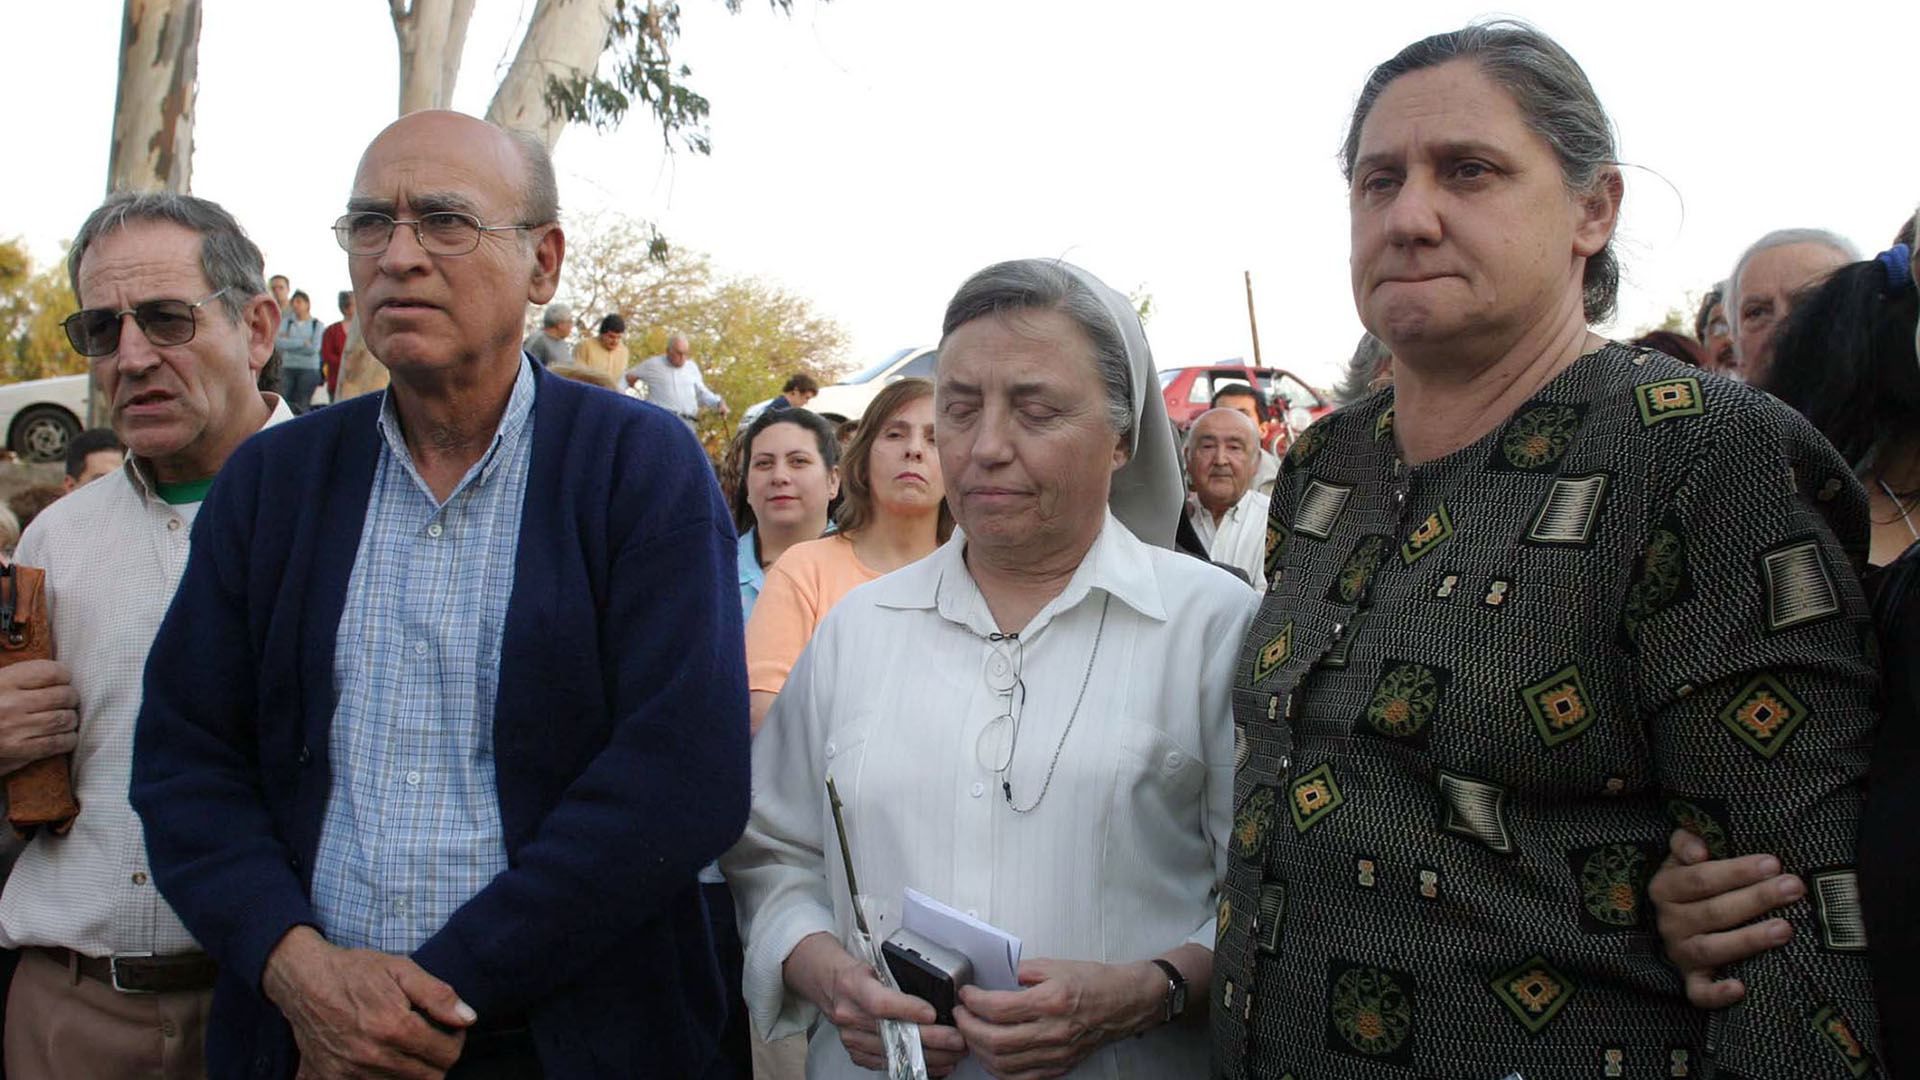 La hermana Pelloni y los padres de Maria Soledad Morales, participan de una marcha a 15 años de su asesinato.
Foto NA